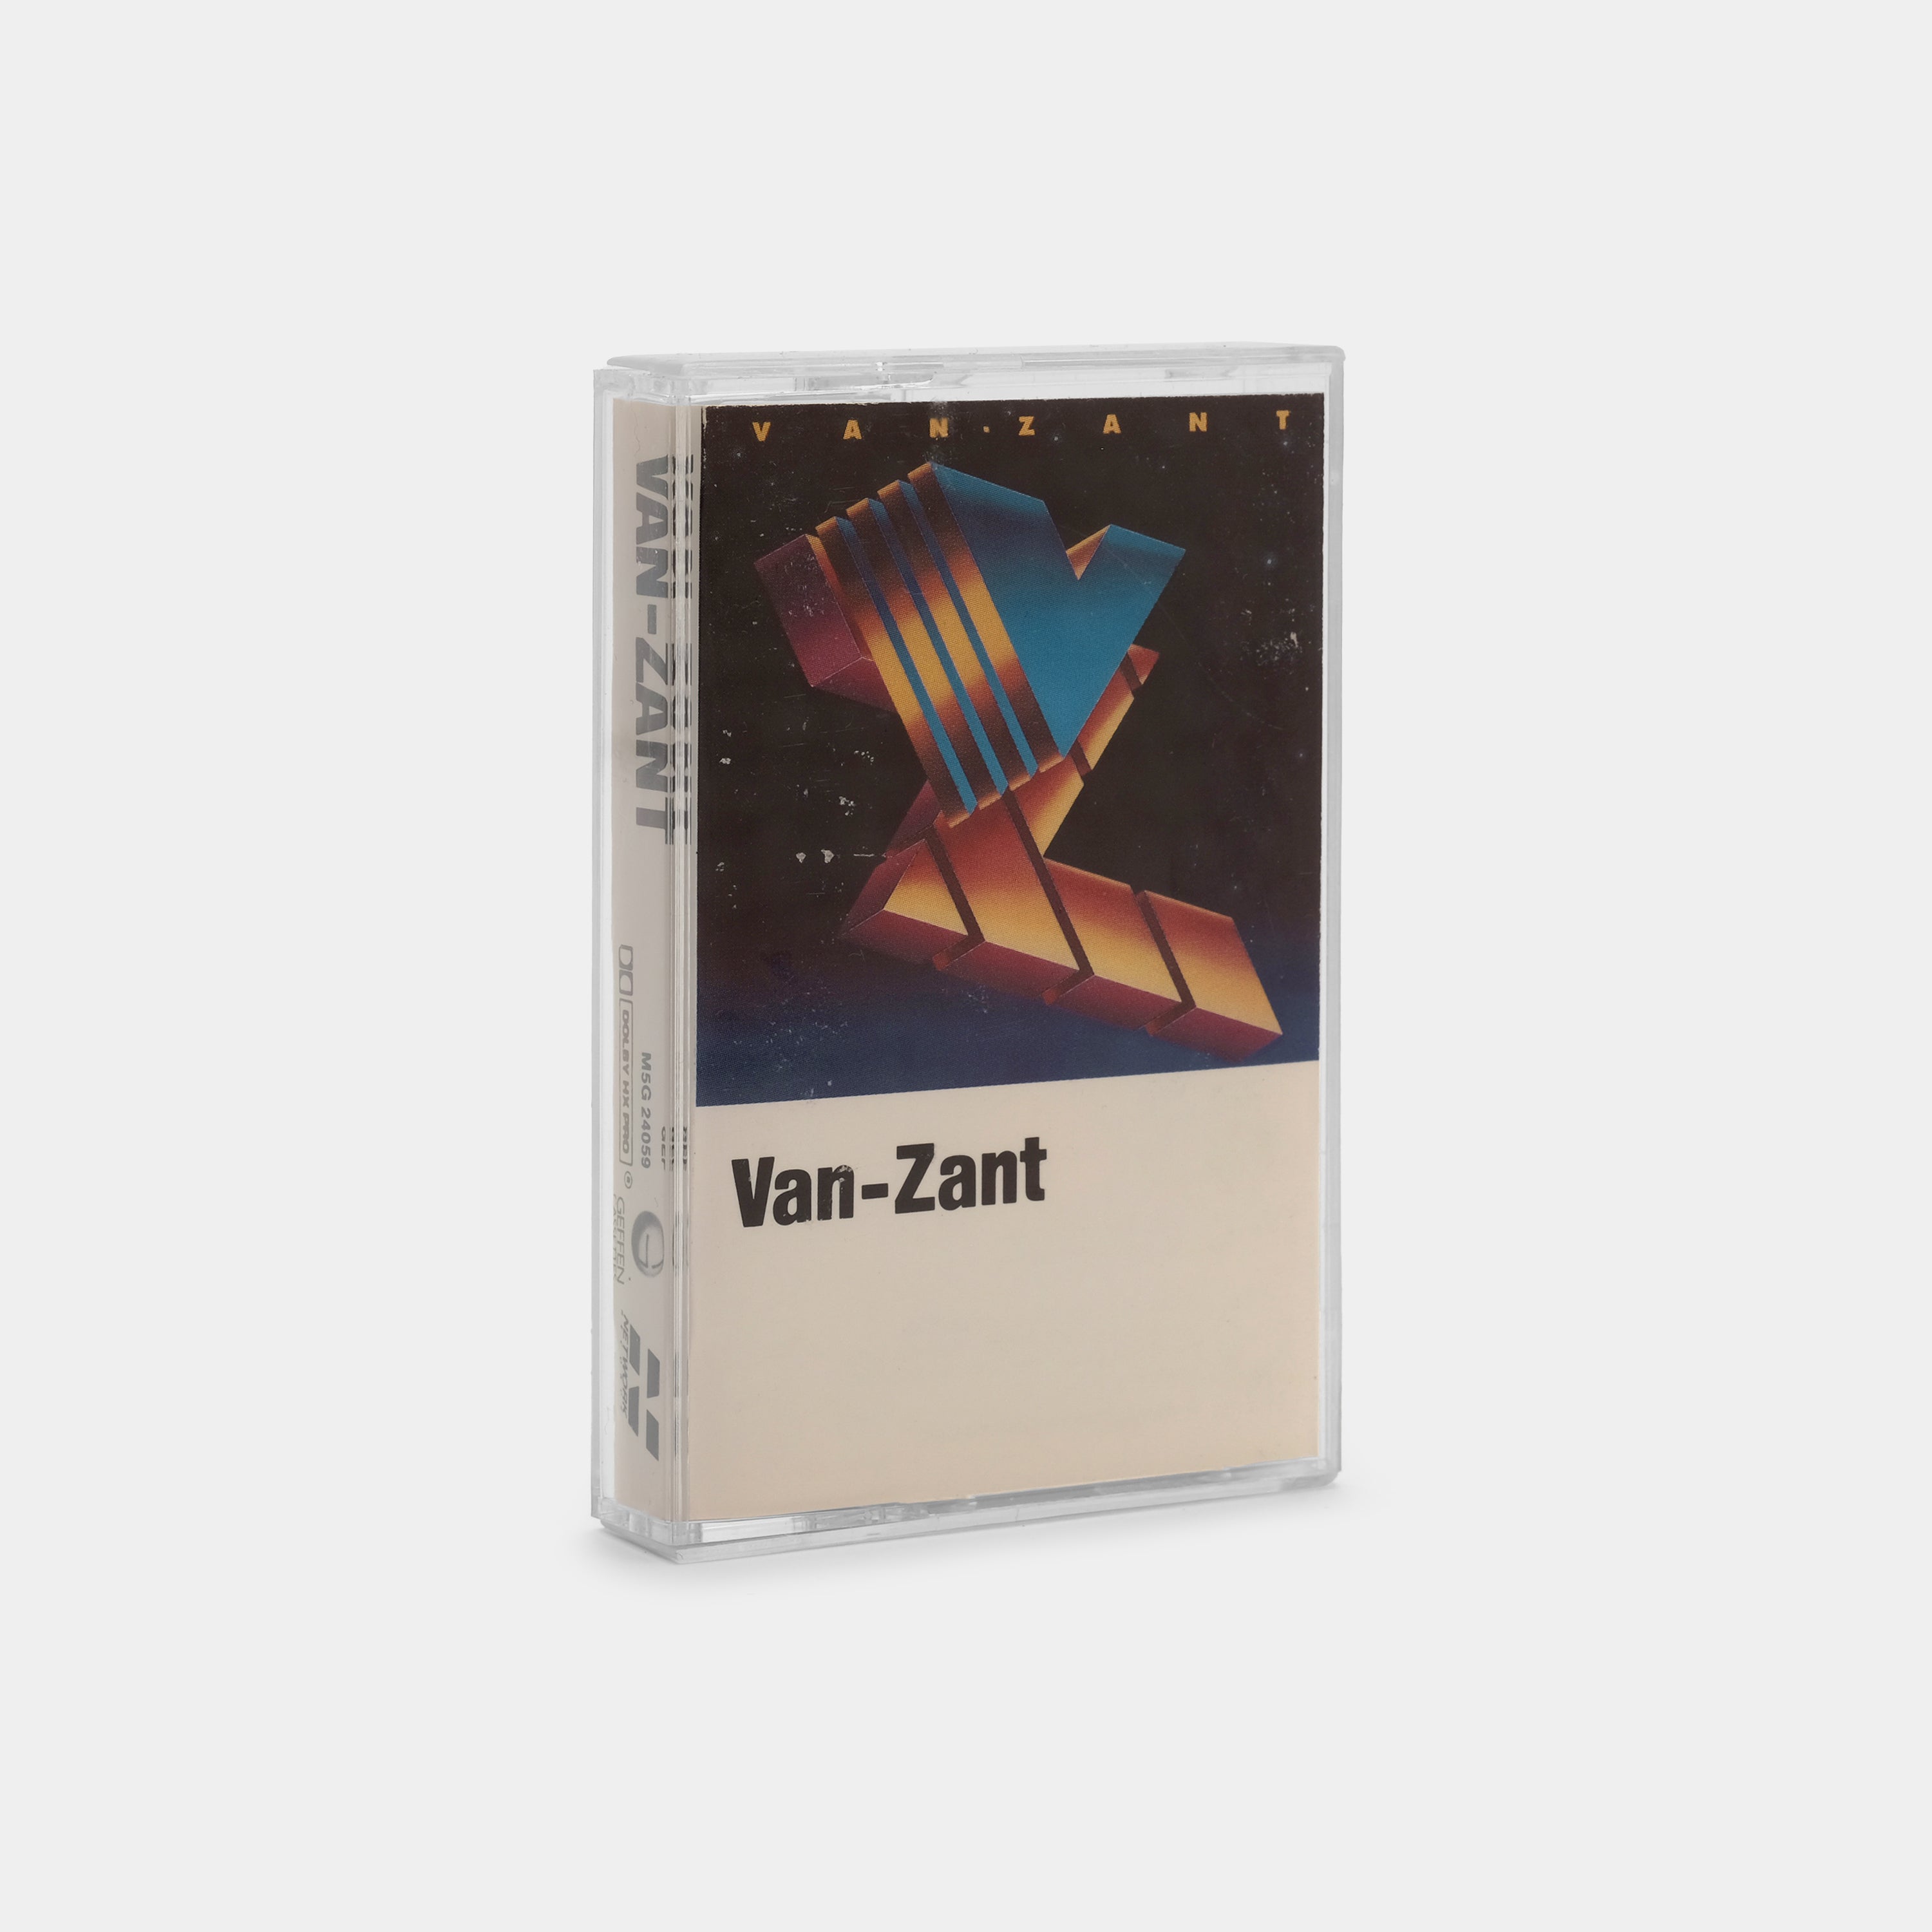 Van-Zant - Van-Zant Cassette Tape